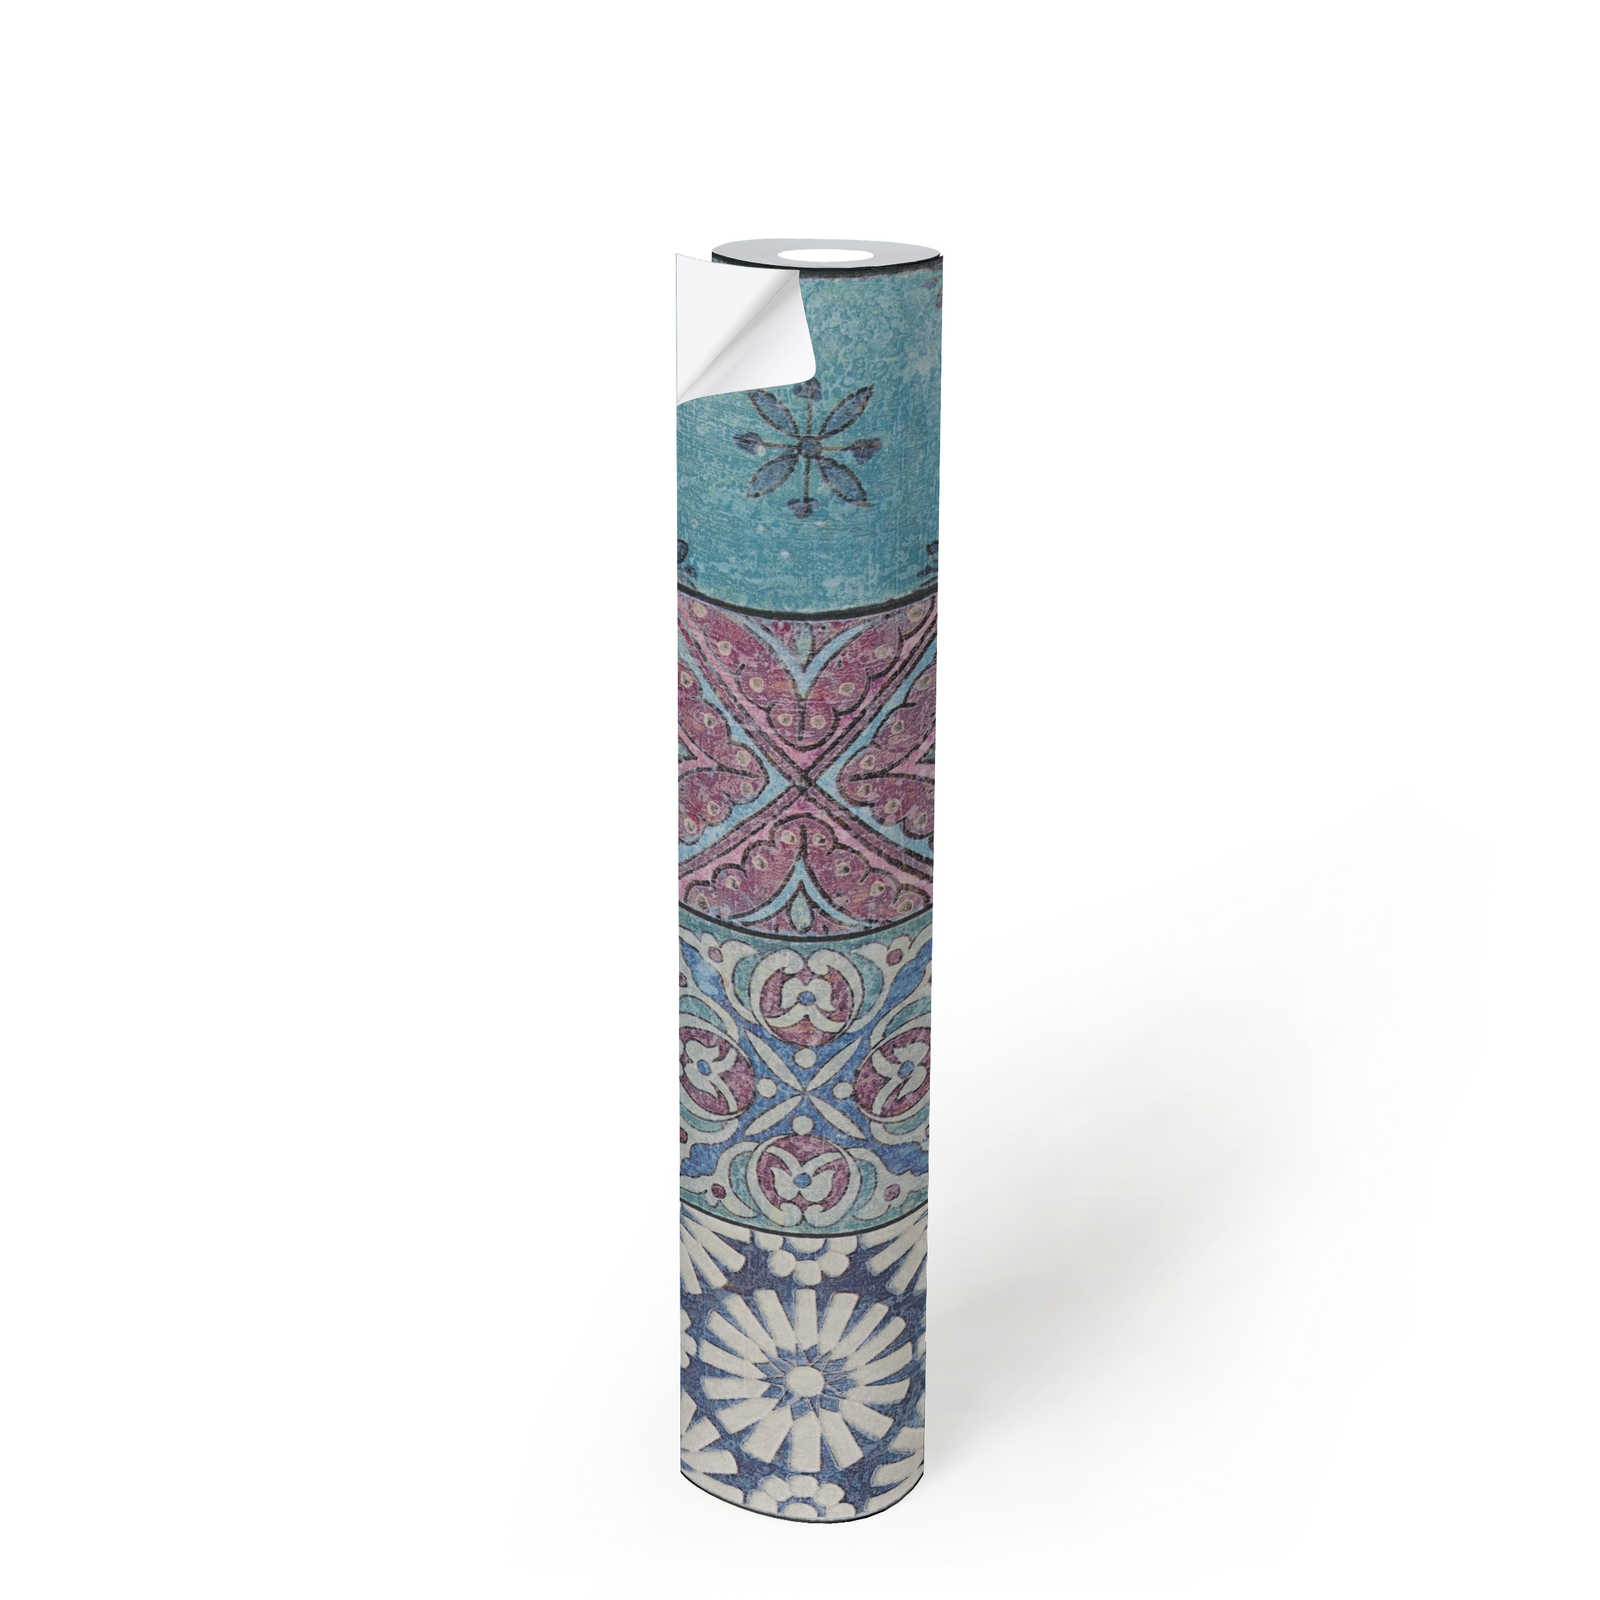             Zelfklevend Tegelbehang Vintage Mozaïek Patroon - Kleurrijk, Blauw, Purper
        